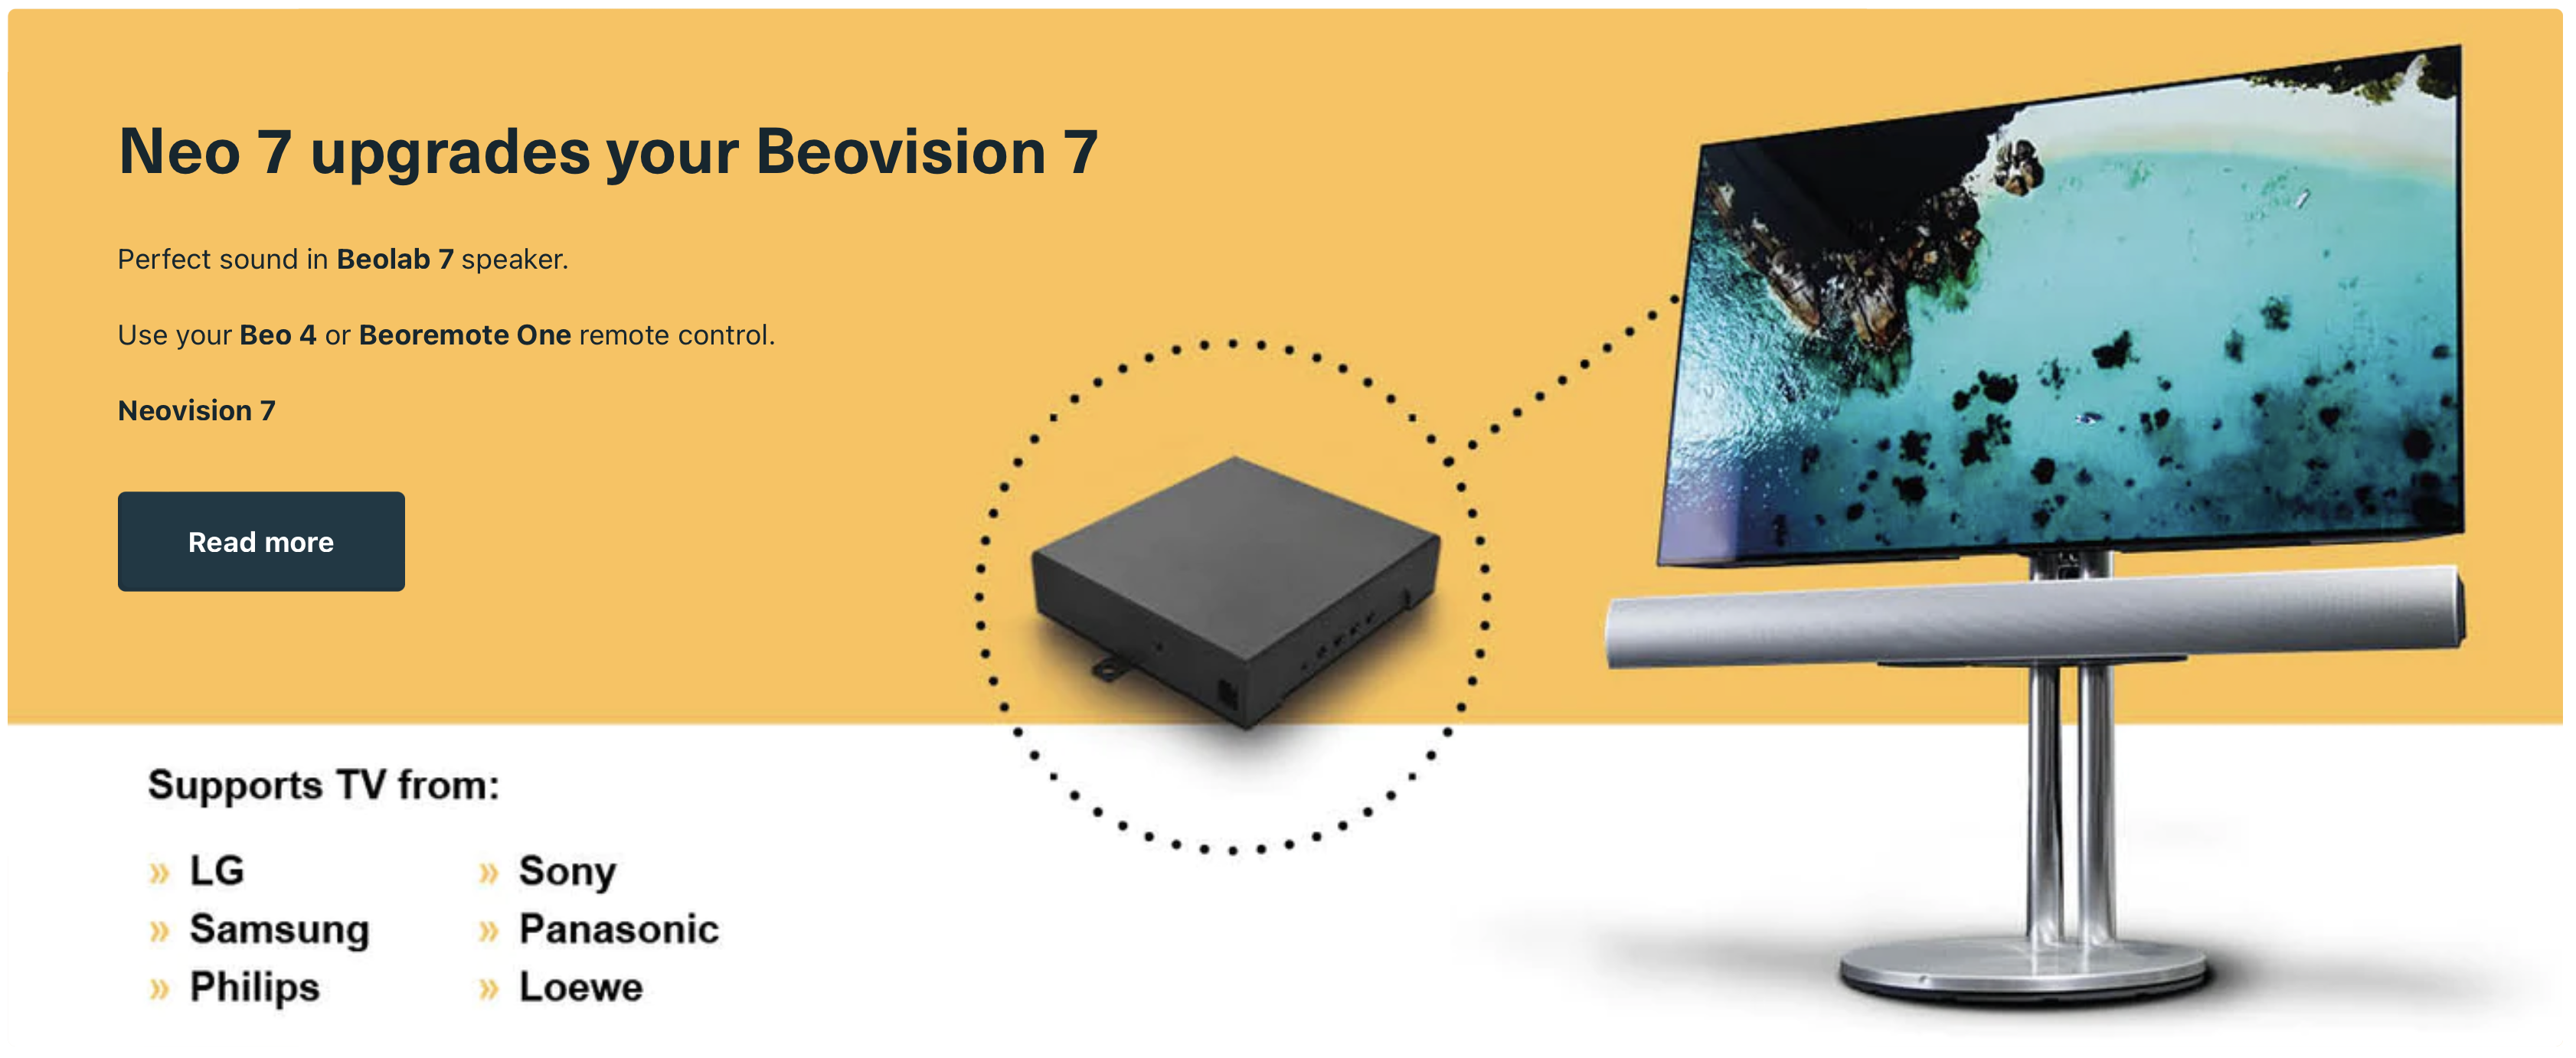 Neo 7 Der Adapter aktualisiert Beovision 7 auf Neovision 7 mit Neo-Technologie